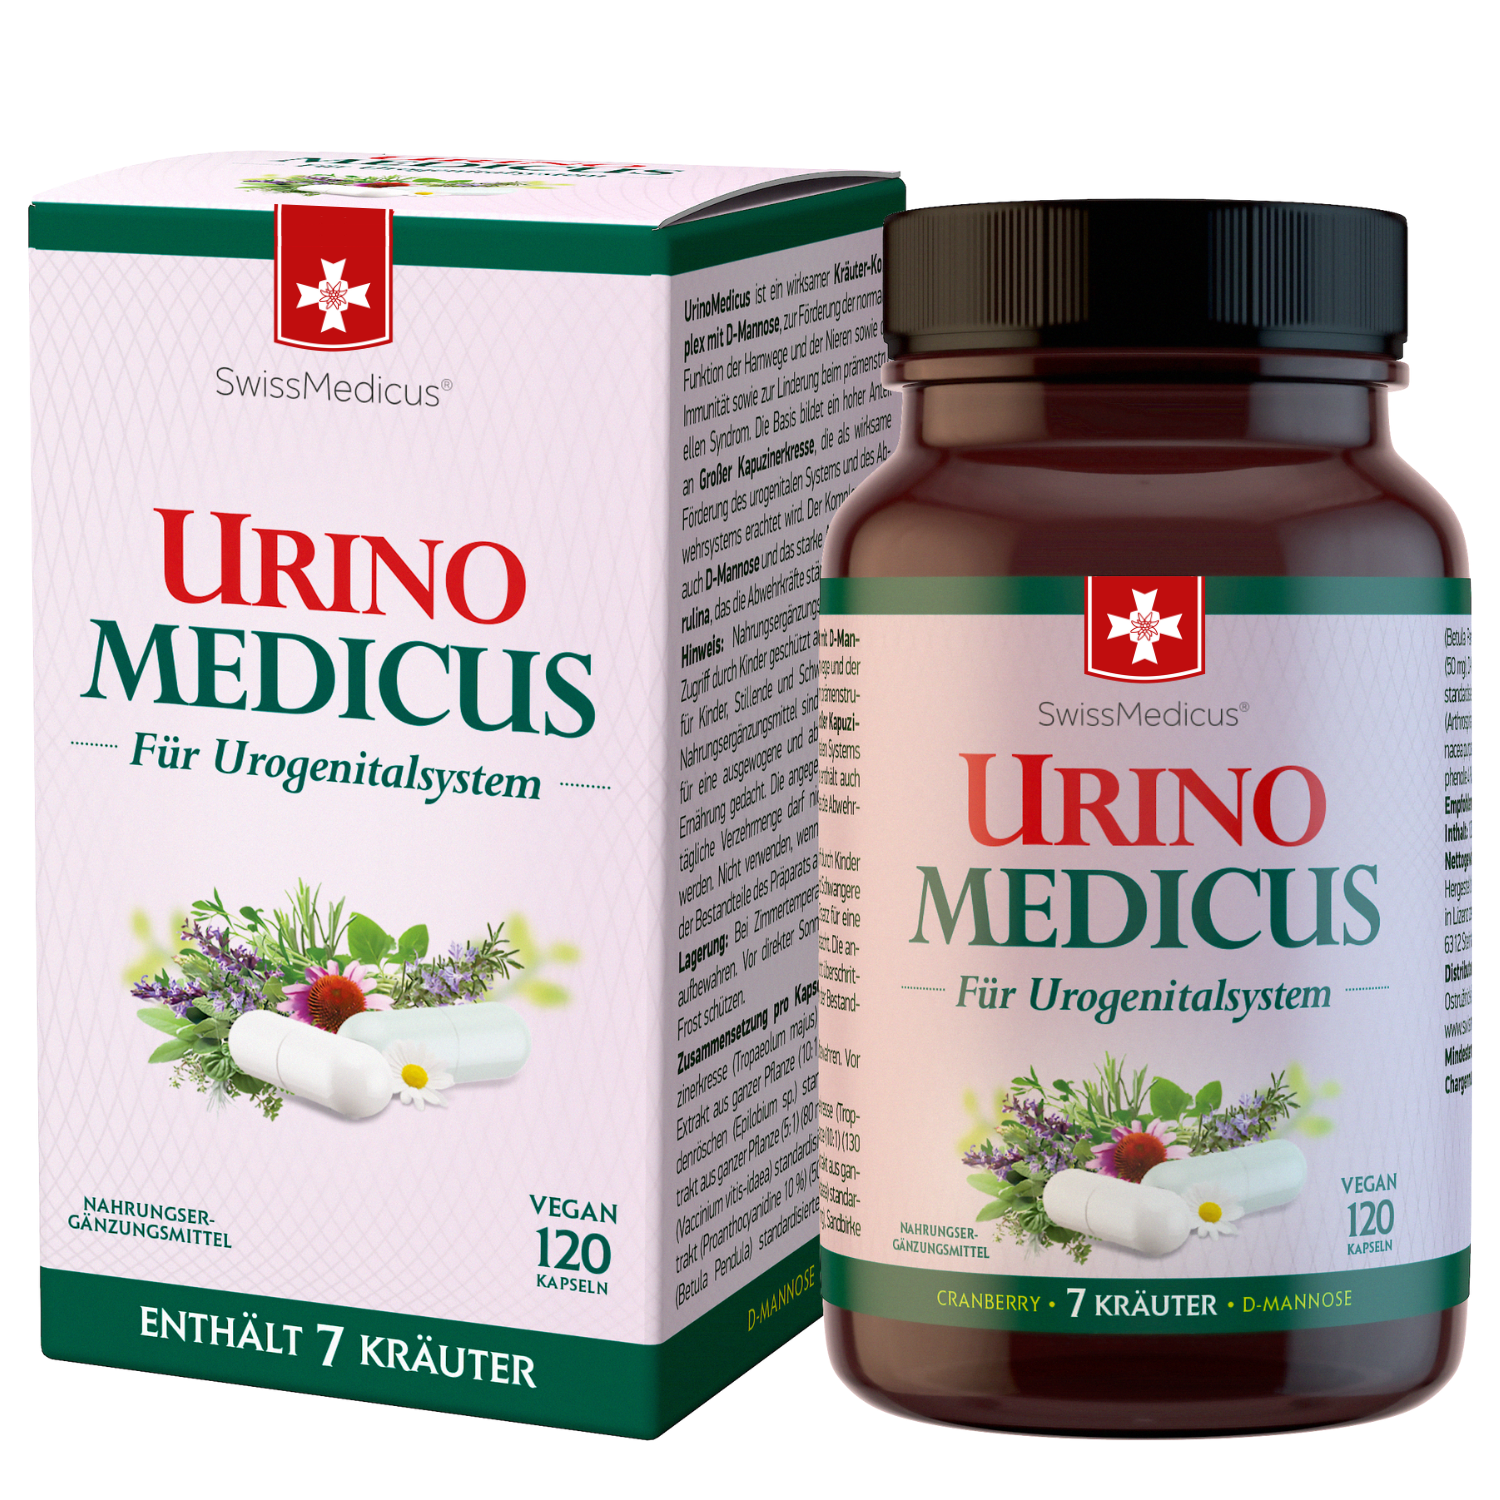 UrinoMedicus 120 capsules